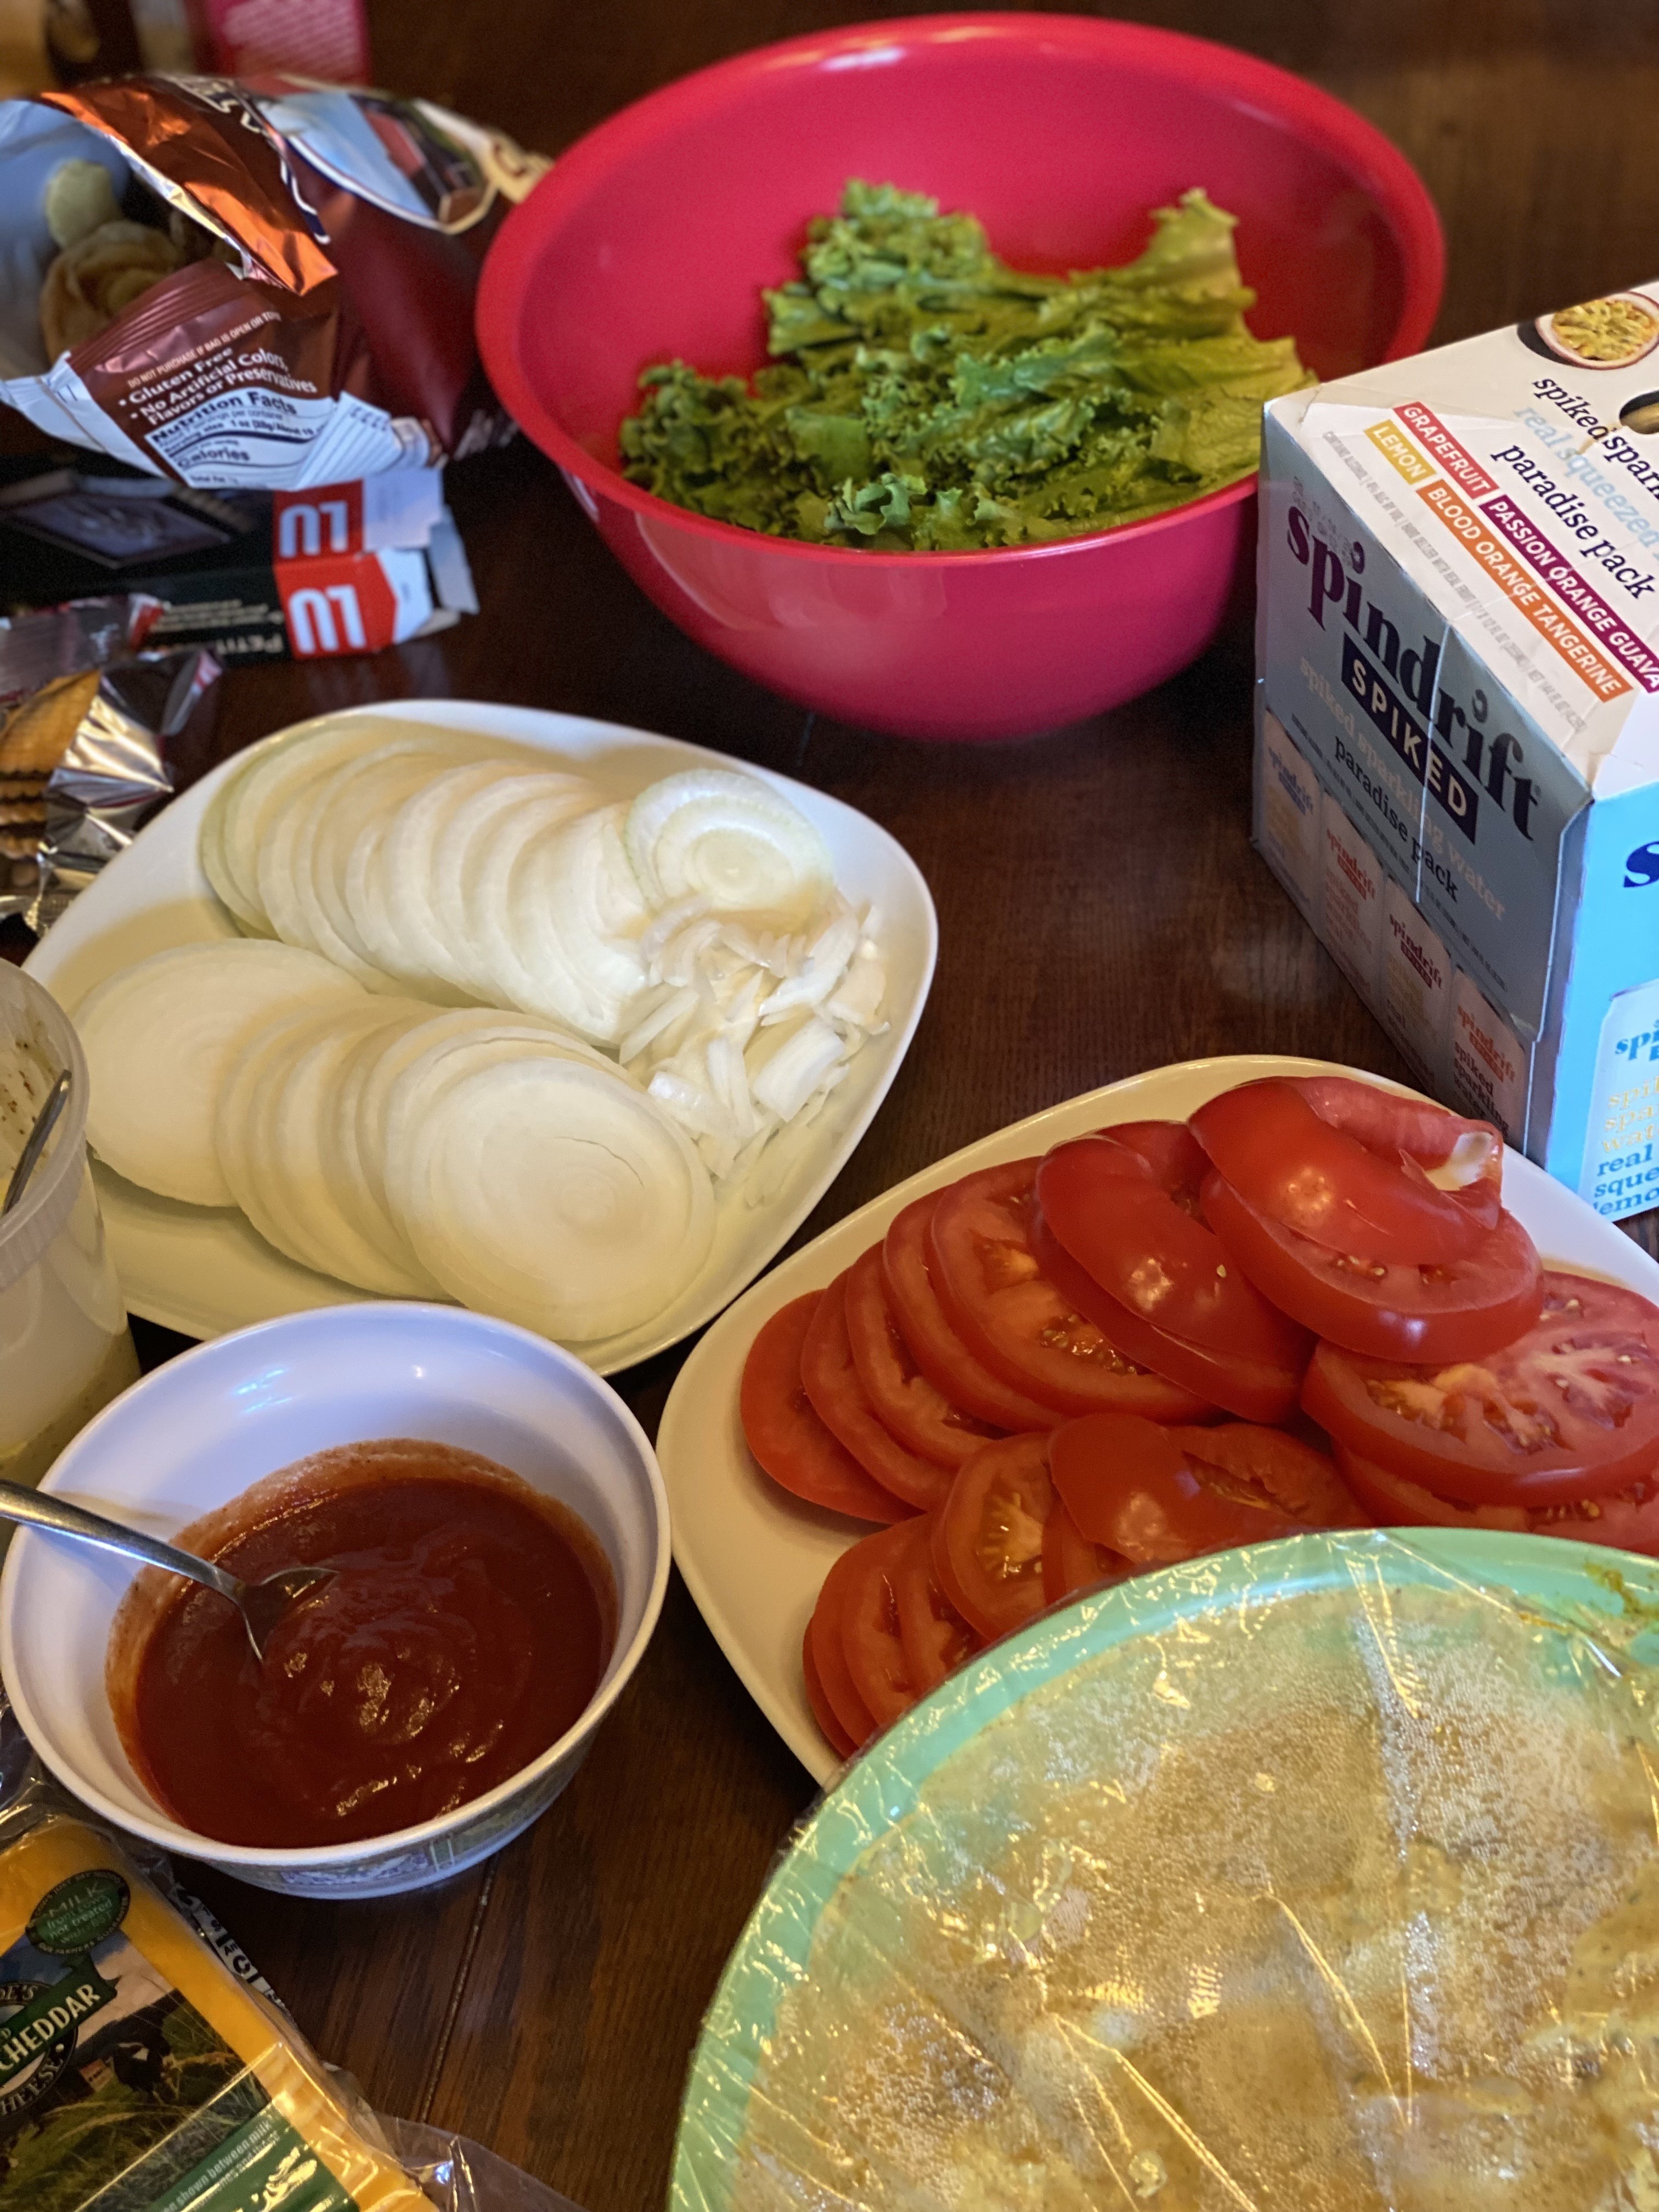 Cut tomatoes, onions, mayo, and ketchup